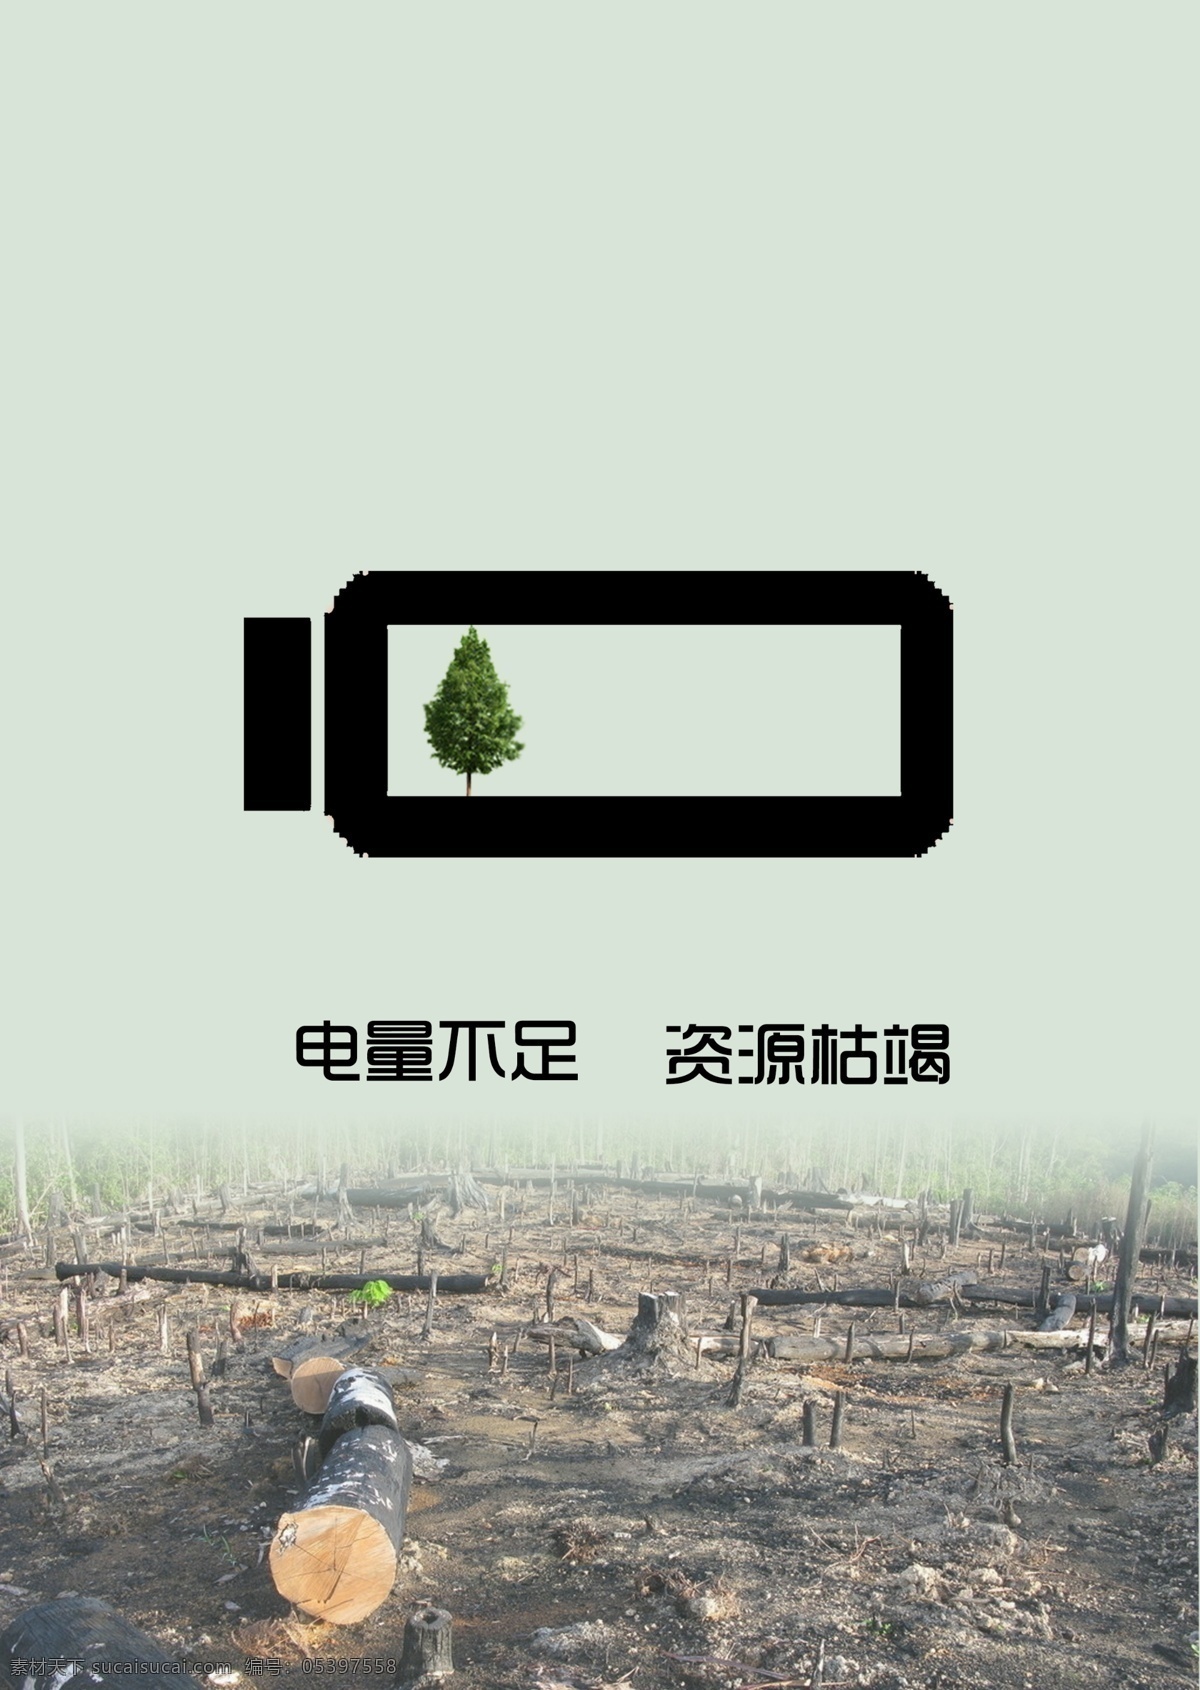 保护 环境 公益 招贴 保护环境 海报 文化 人类 生活 垃圾 节奏 树打针 医树 数木 电池 生态 砍伐